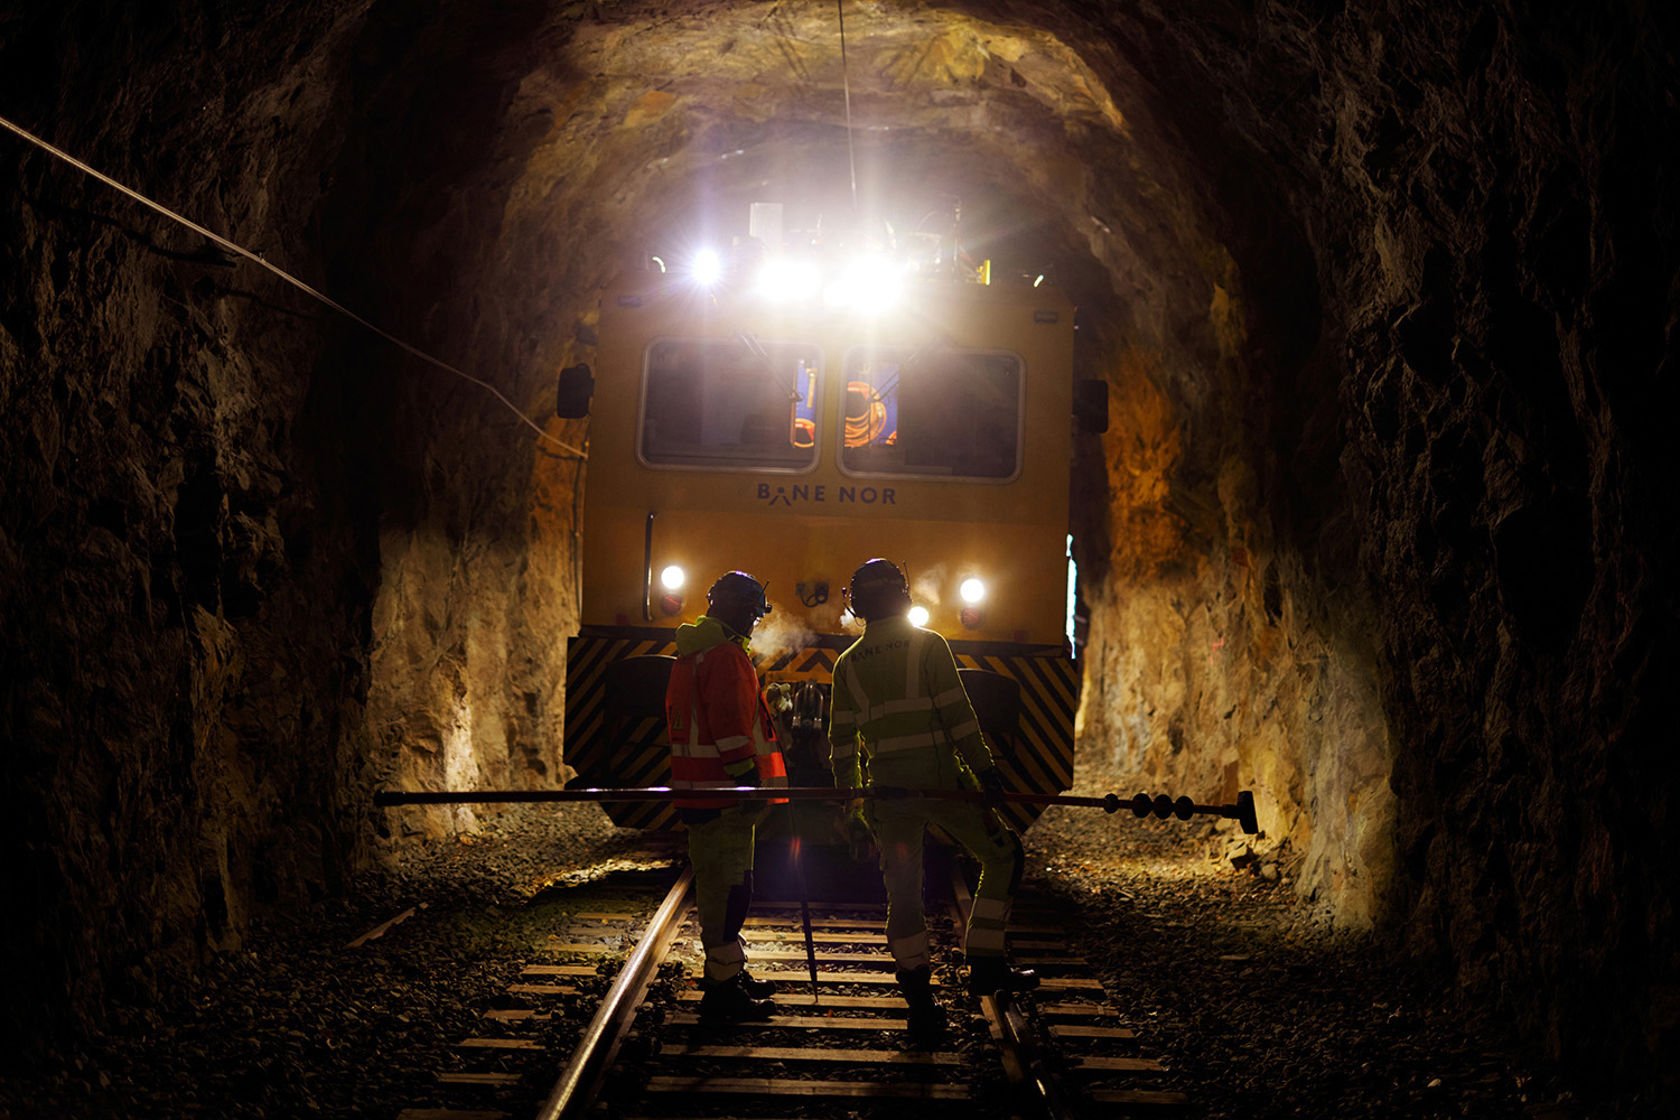 Skinnegående arbeidsmaskin i tunnel, to personer jobber i sporet.